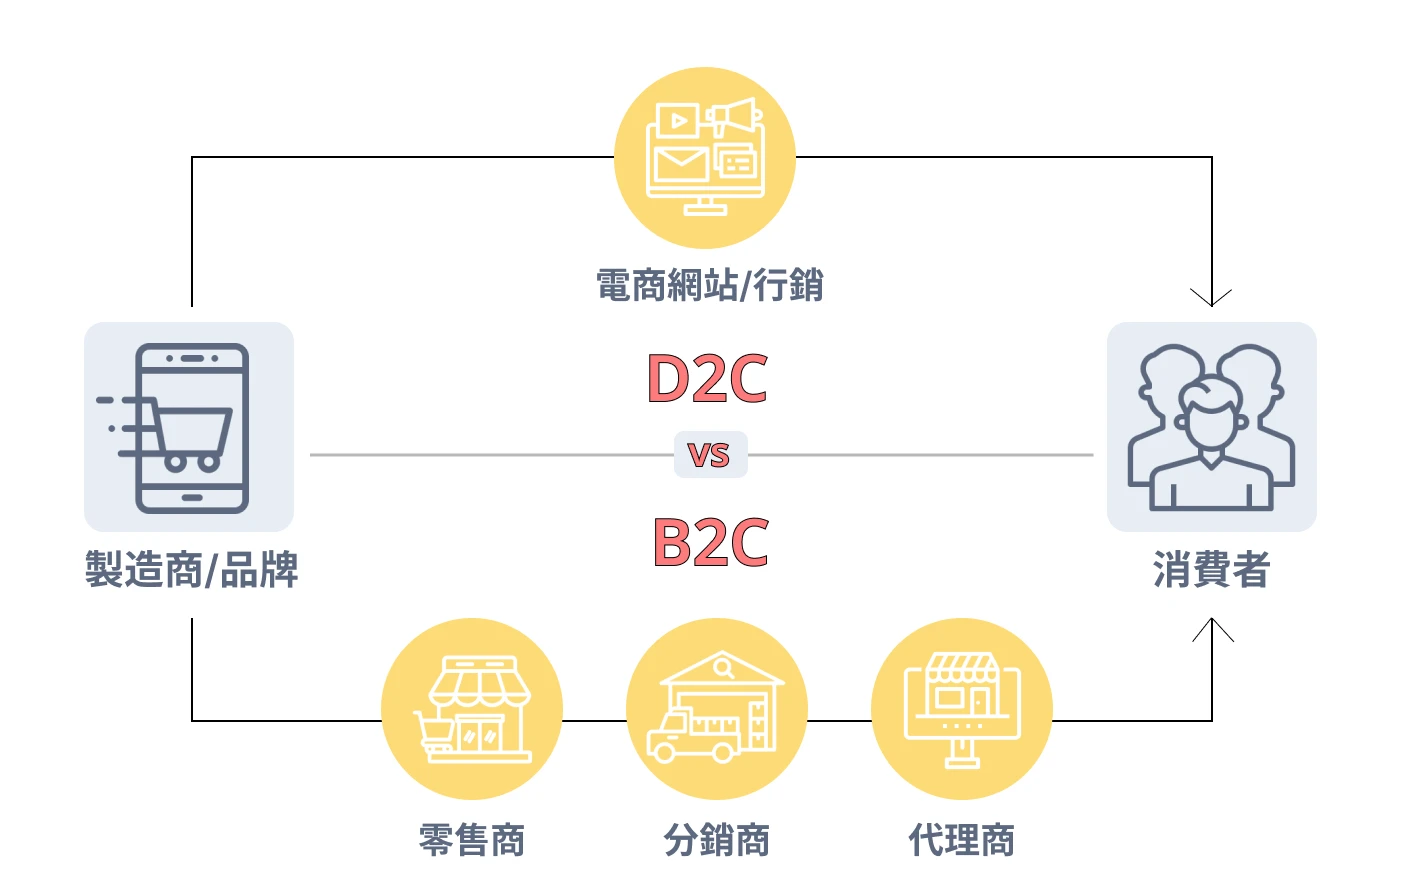 圖 2. D2C vs. B2C 商業模式差異圖